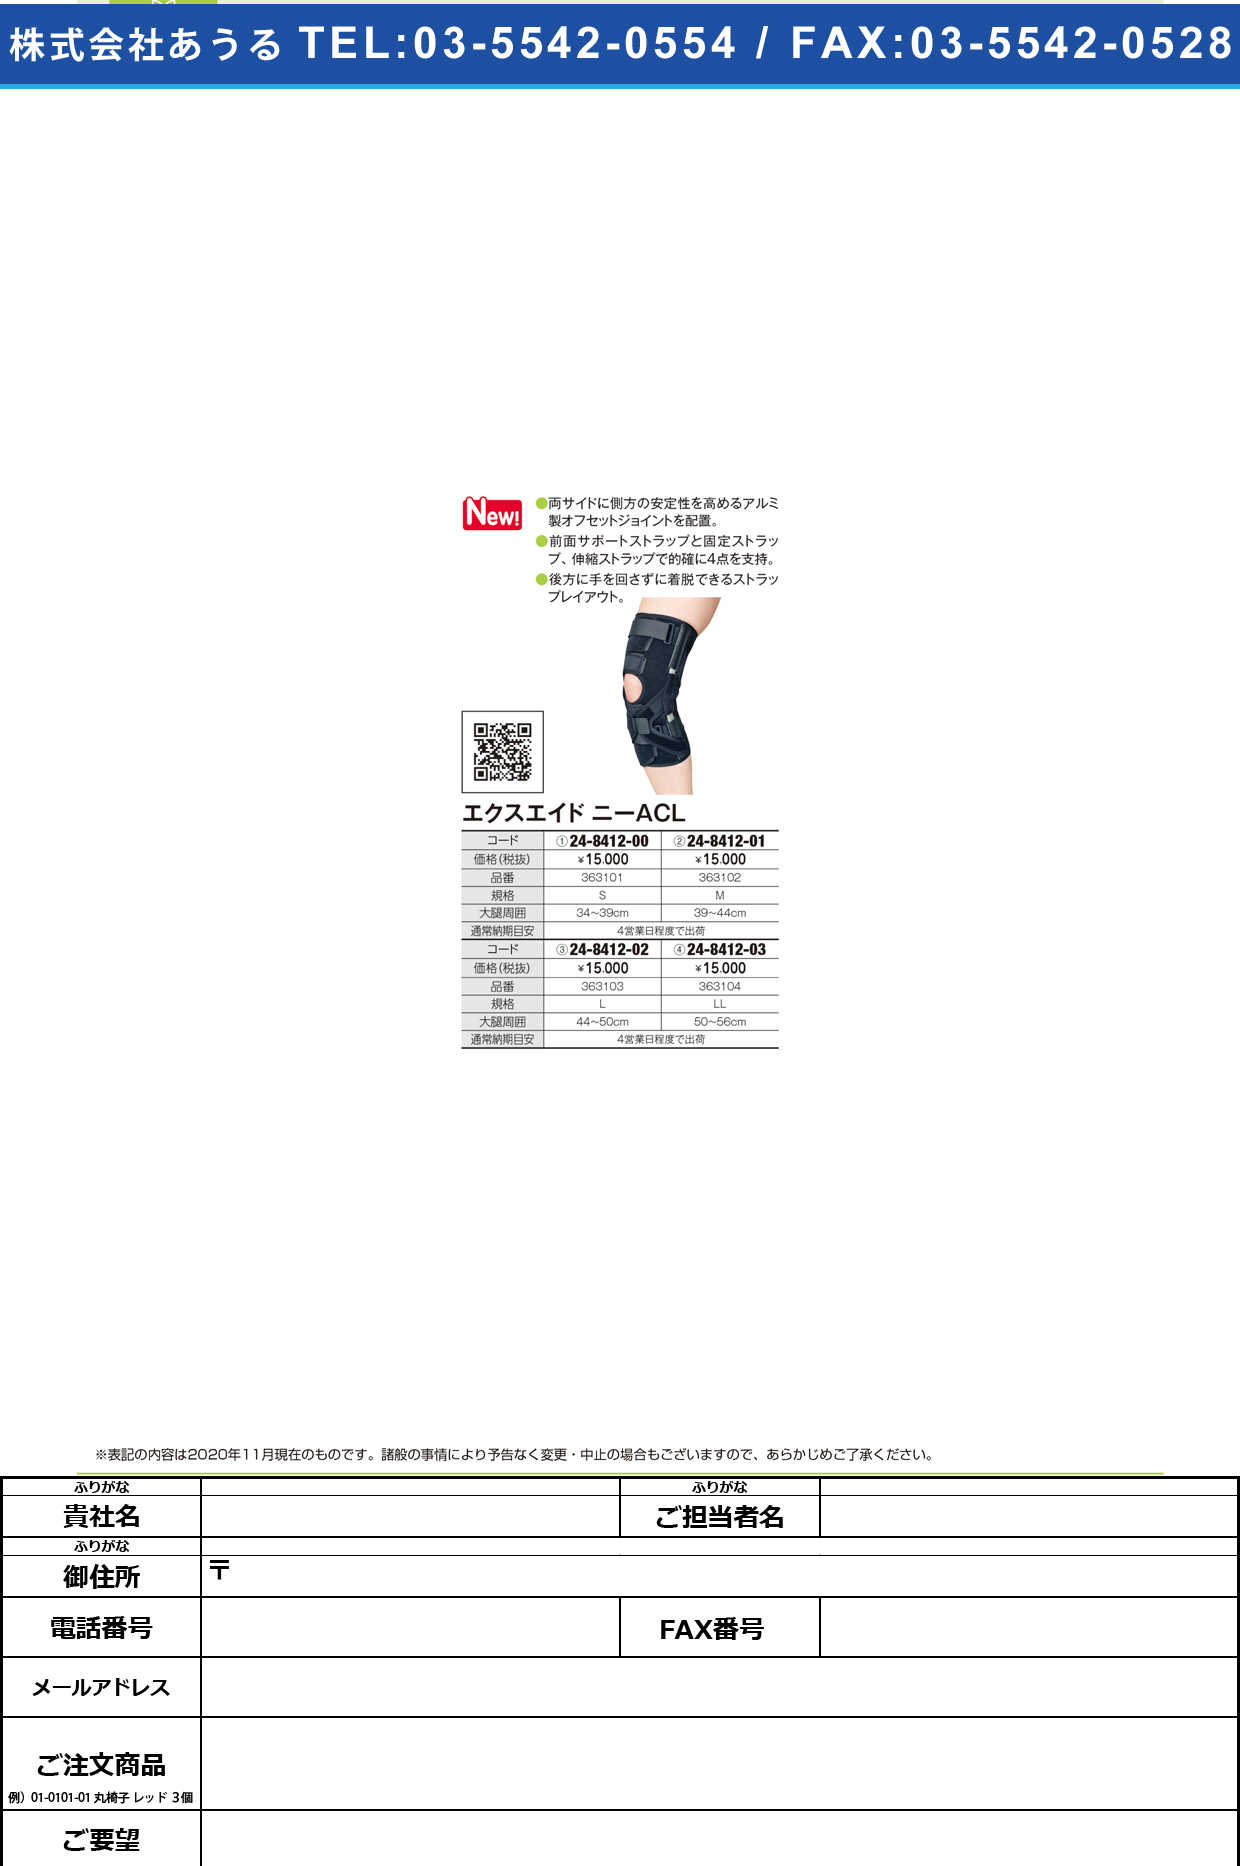 エクスエイド ニーACL 363102(M)363102(M)(24-8412-01)【日本シグマックス】(販売単位:1)